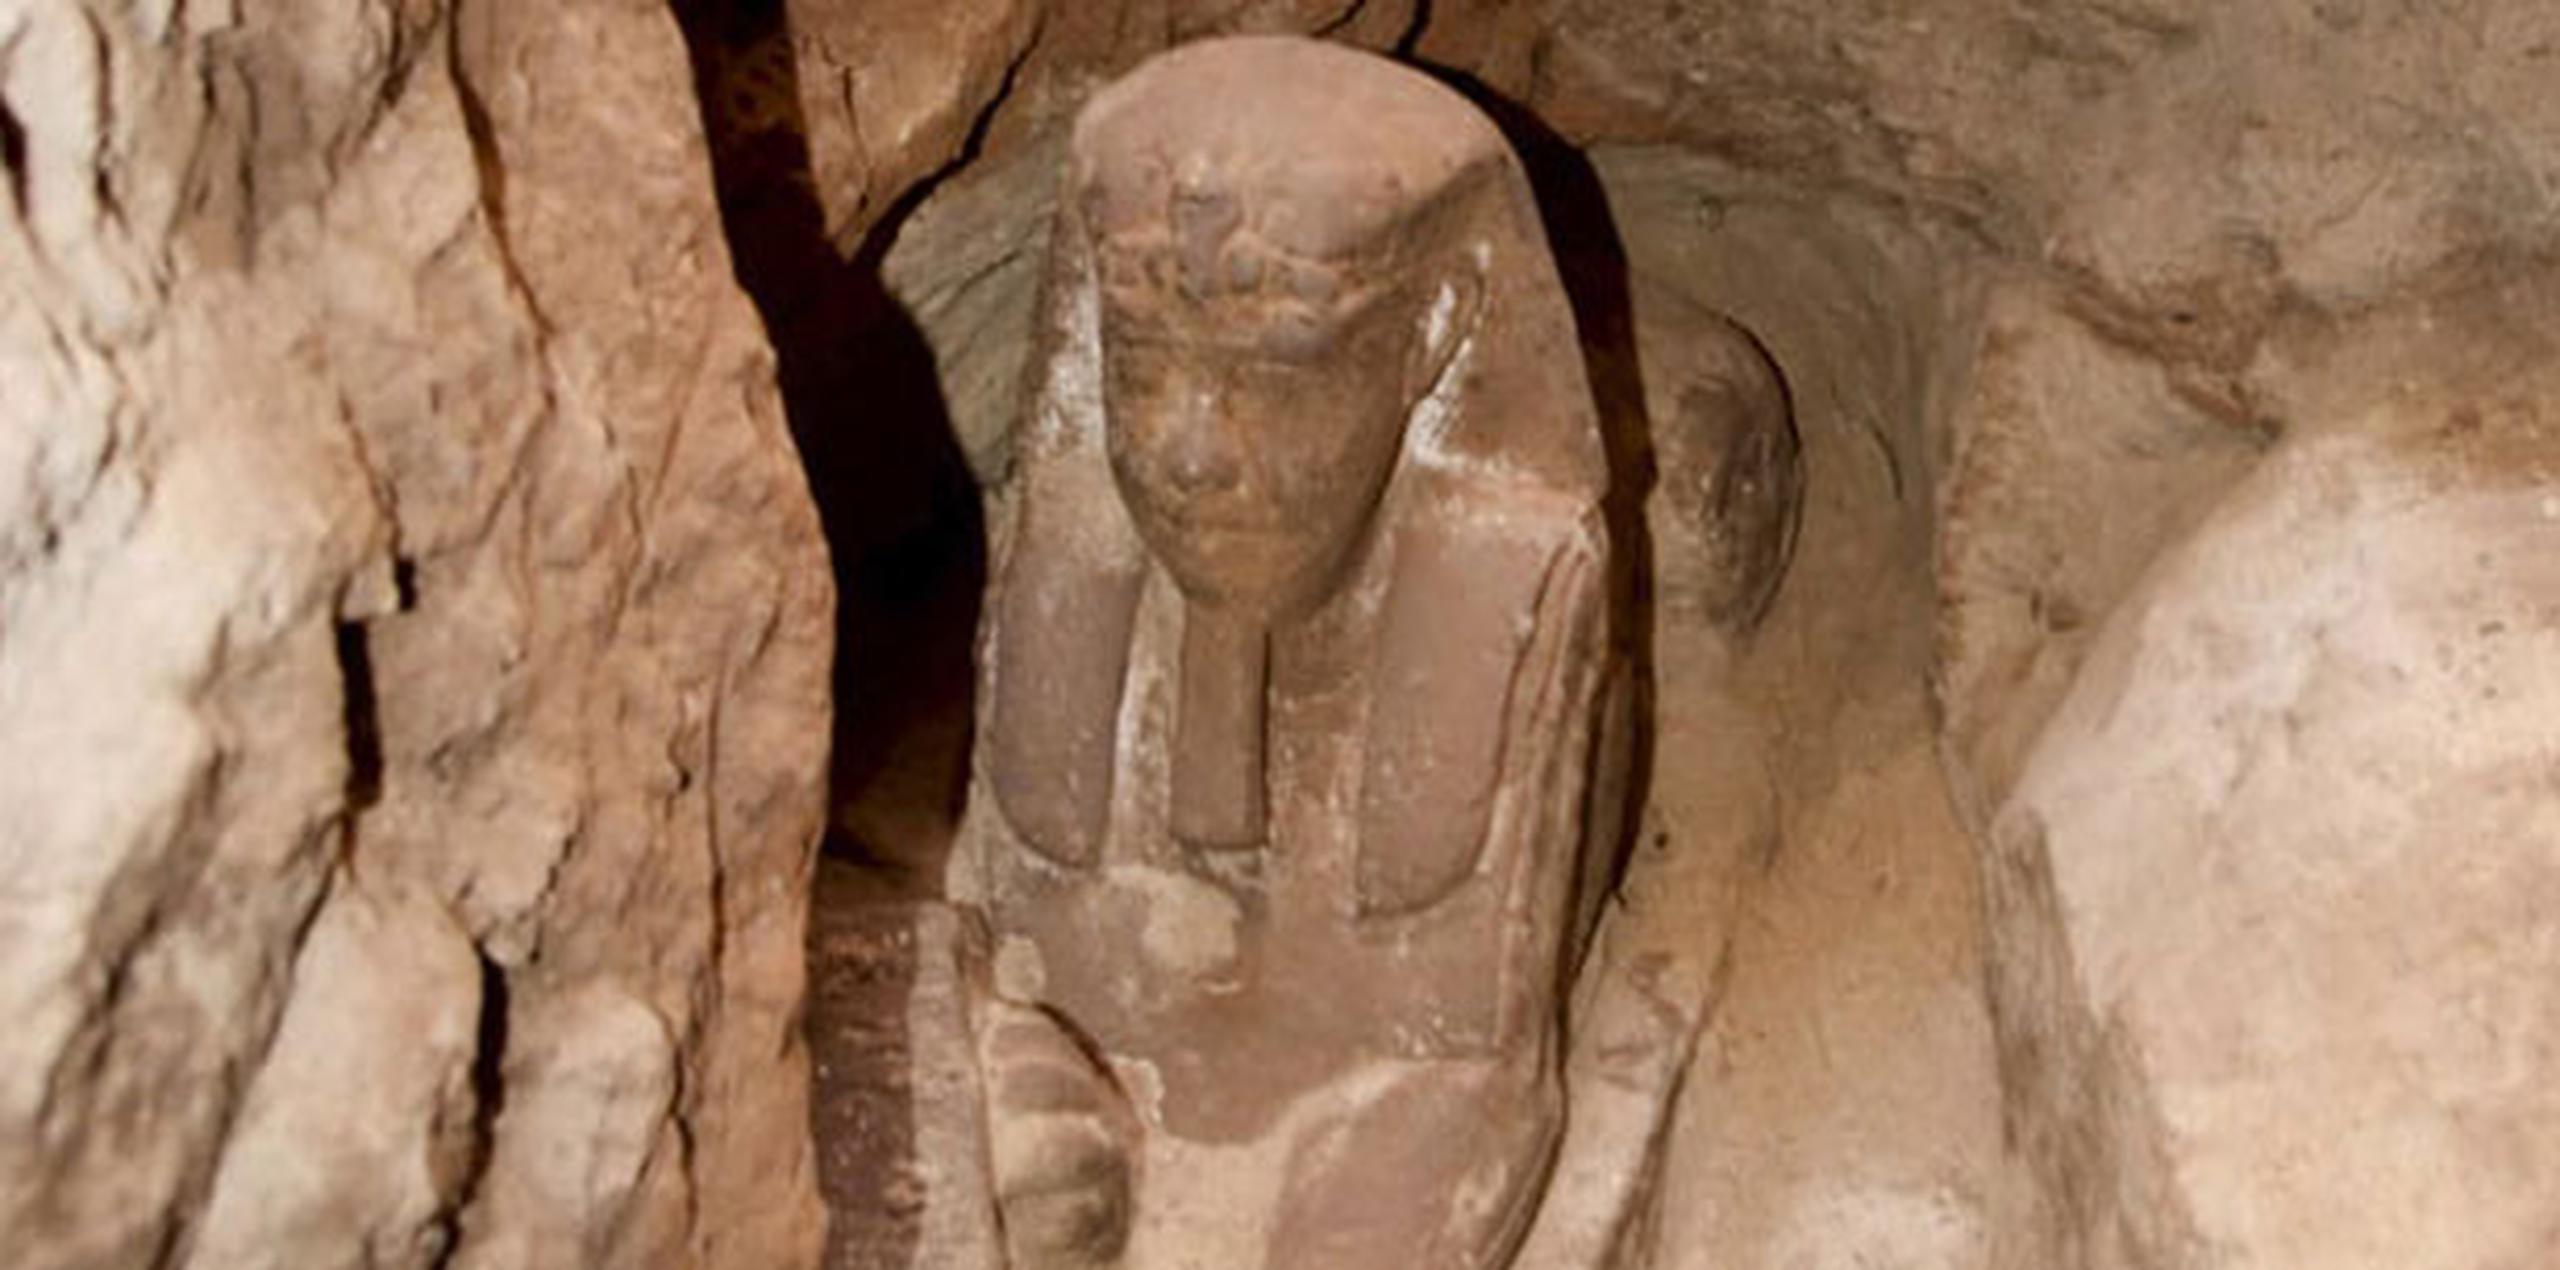 Egipto espera que descubrimientos como estos atraigan el turismo. (AP)